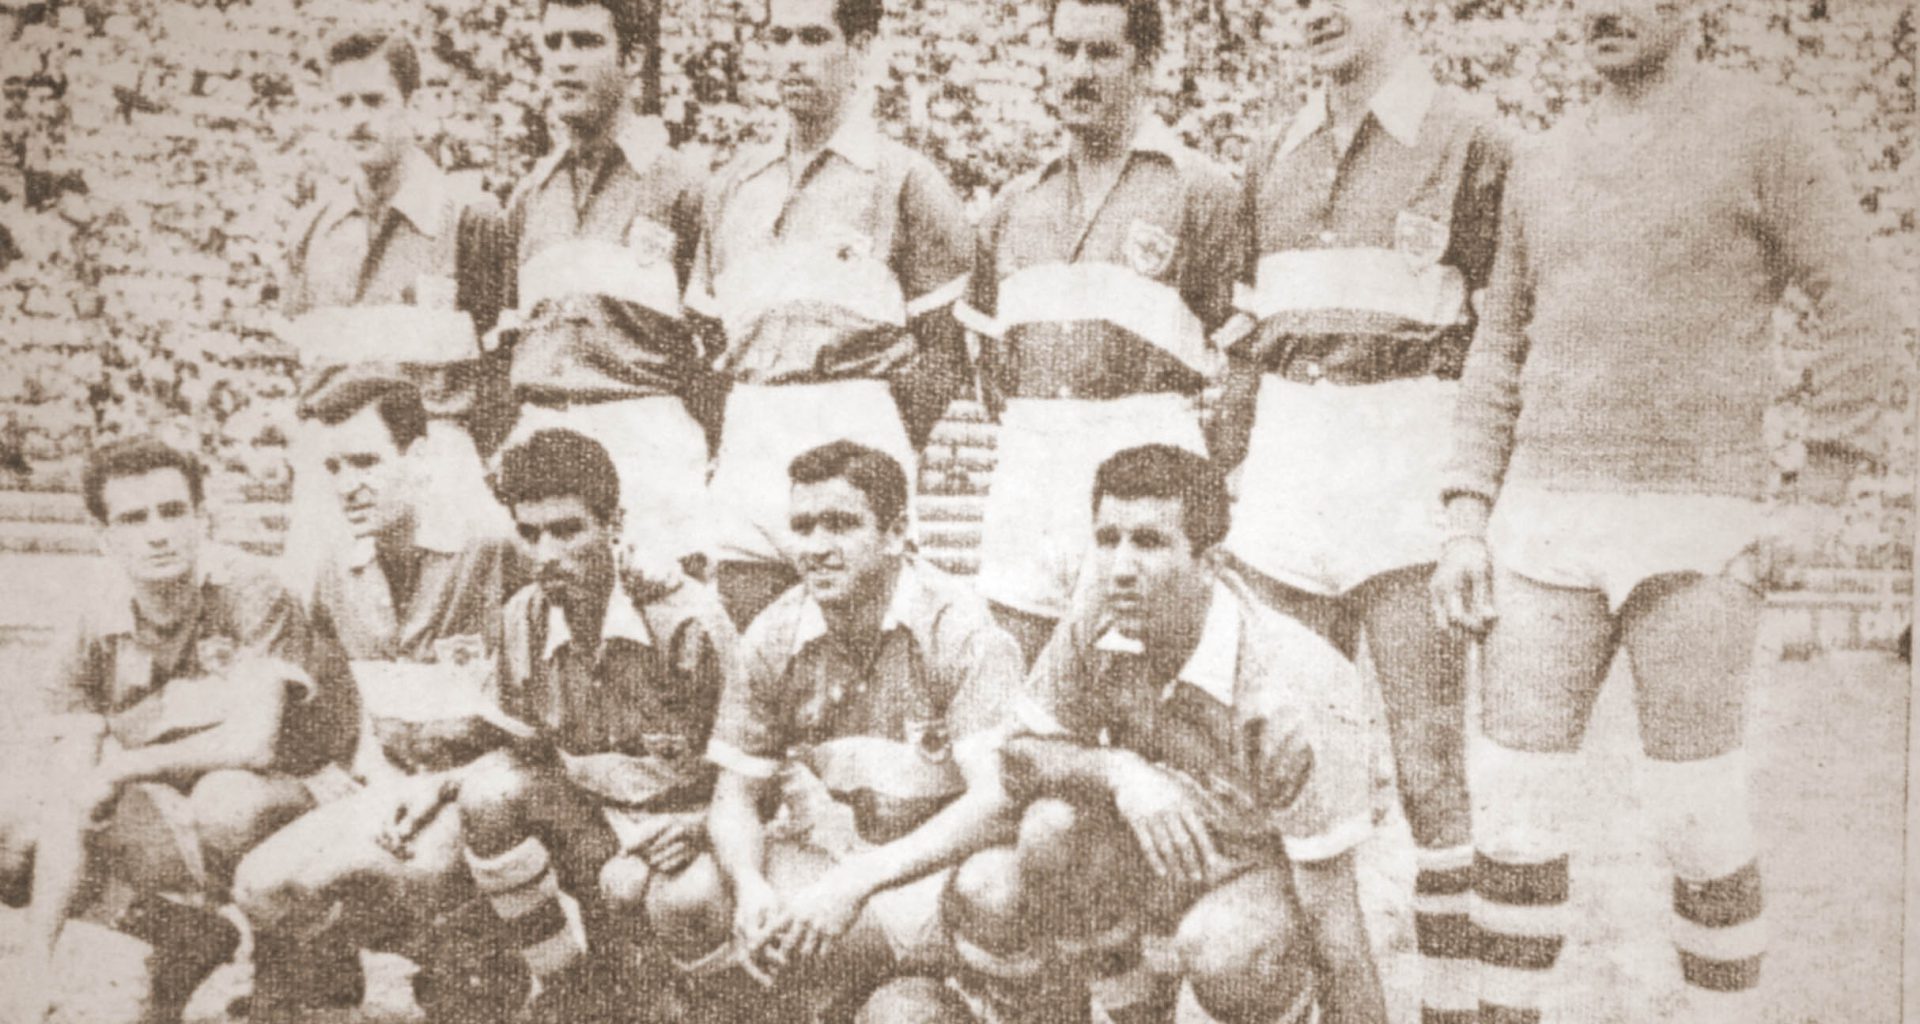 Alineación del equipo campeón de Primera División 1954-55